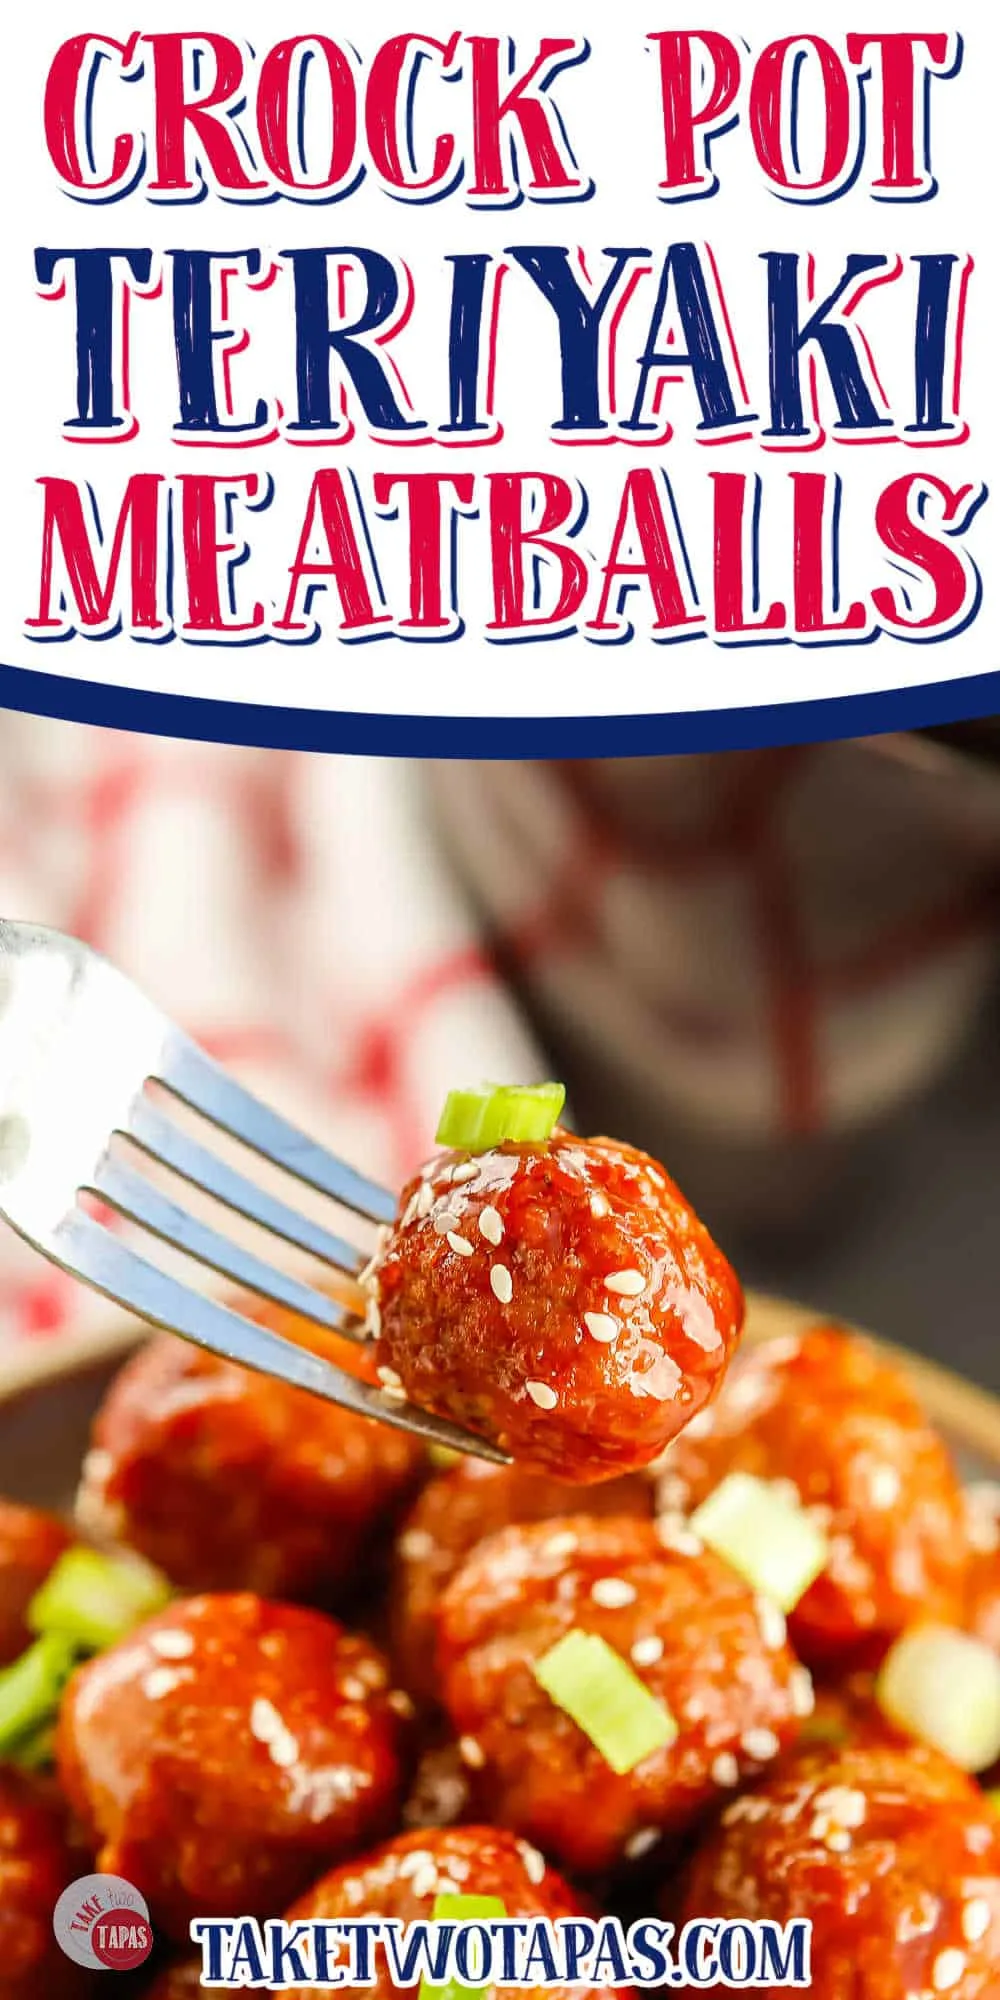 meatball on fork with text "crockpot teriyaki meatballs"